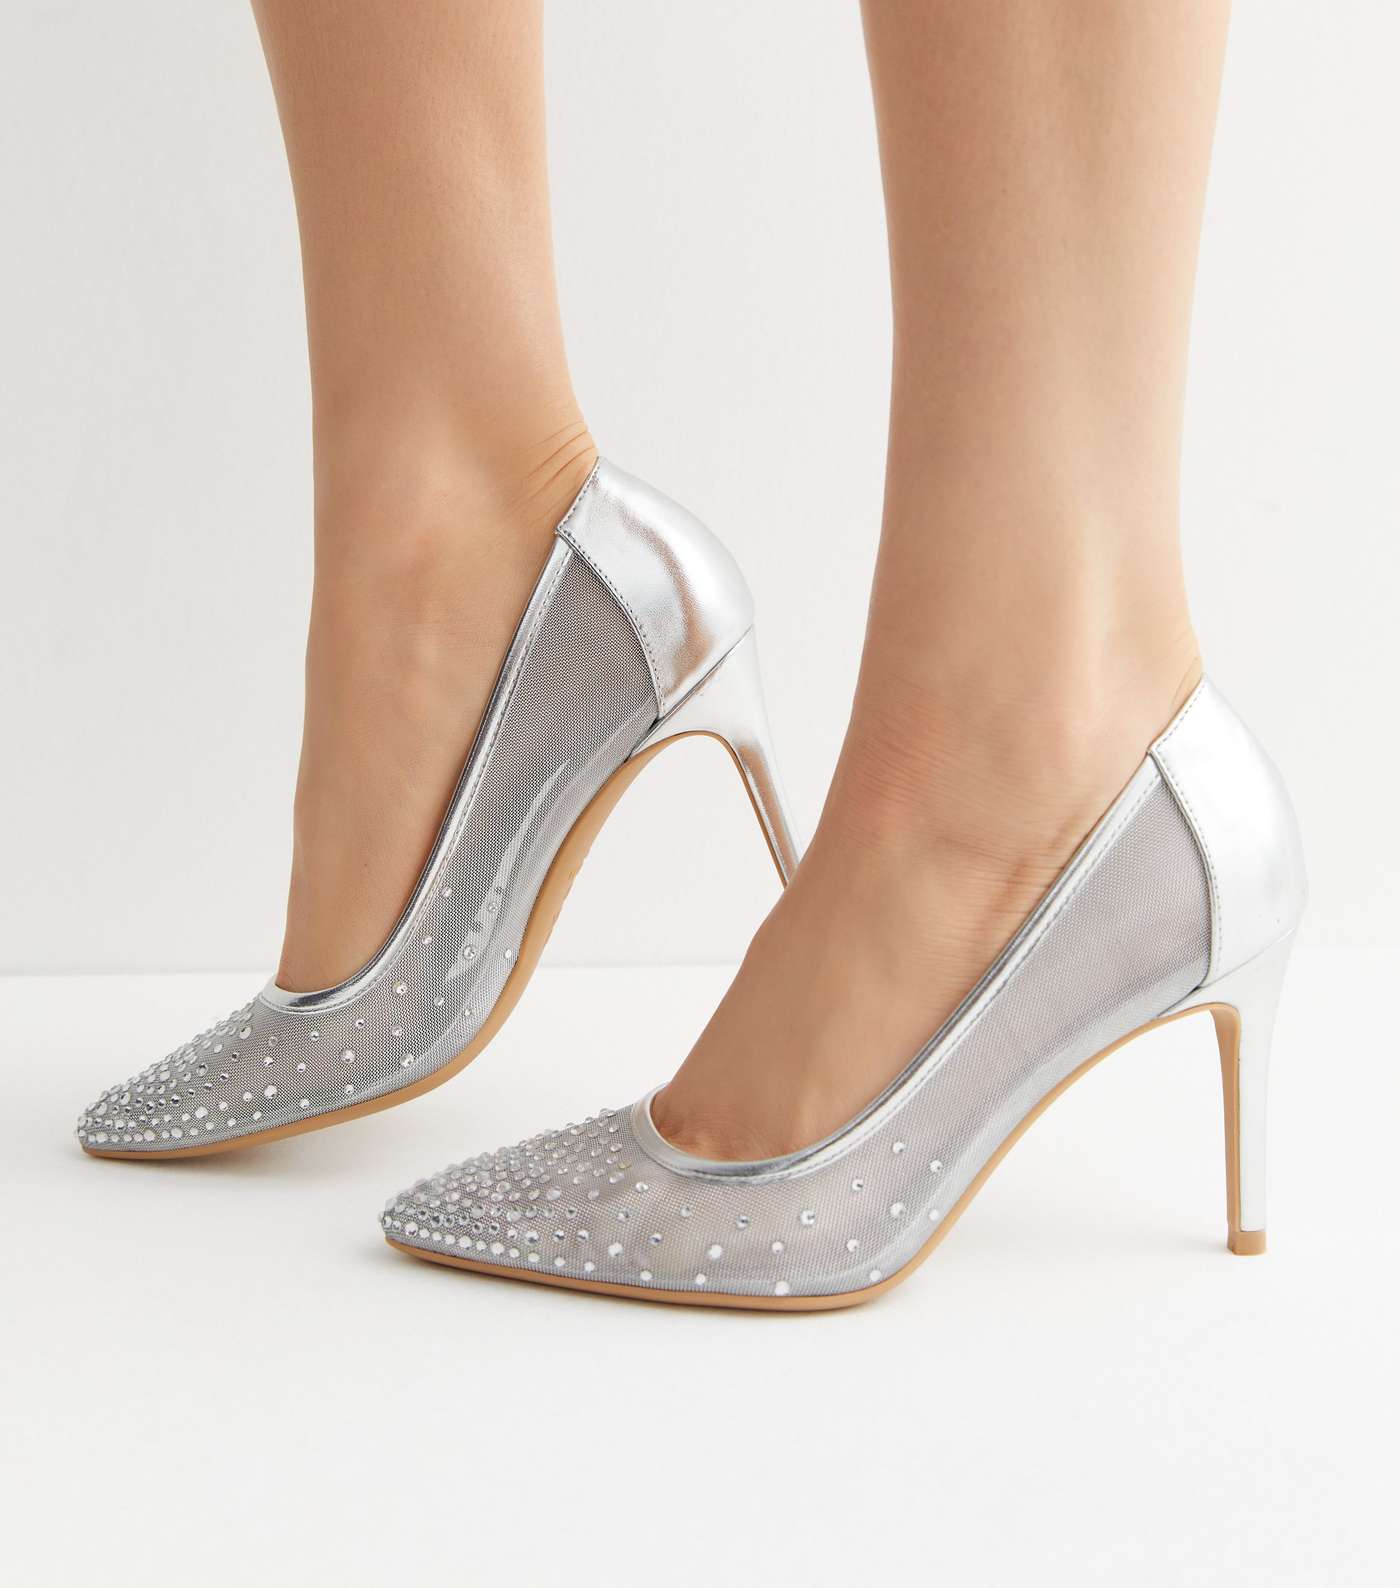 Silver Mesh Diamanté Stiletto Heel Court Shoes Image 2